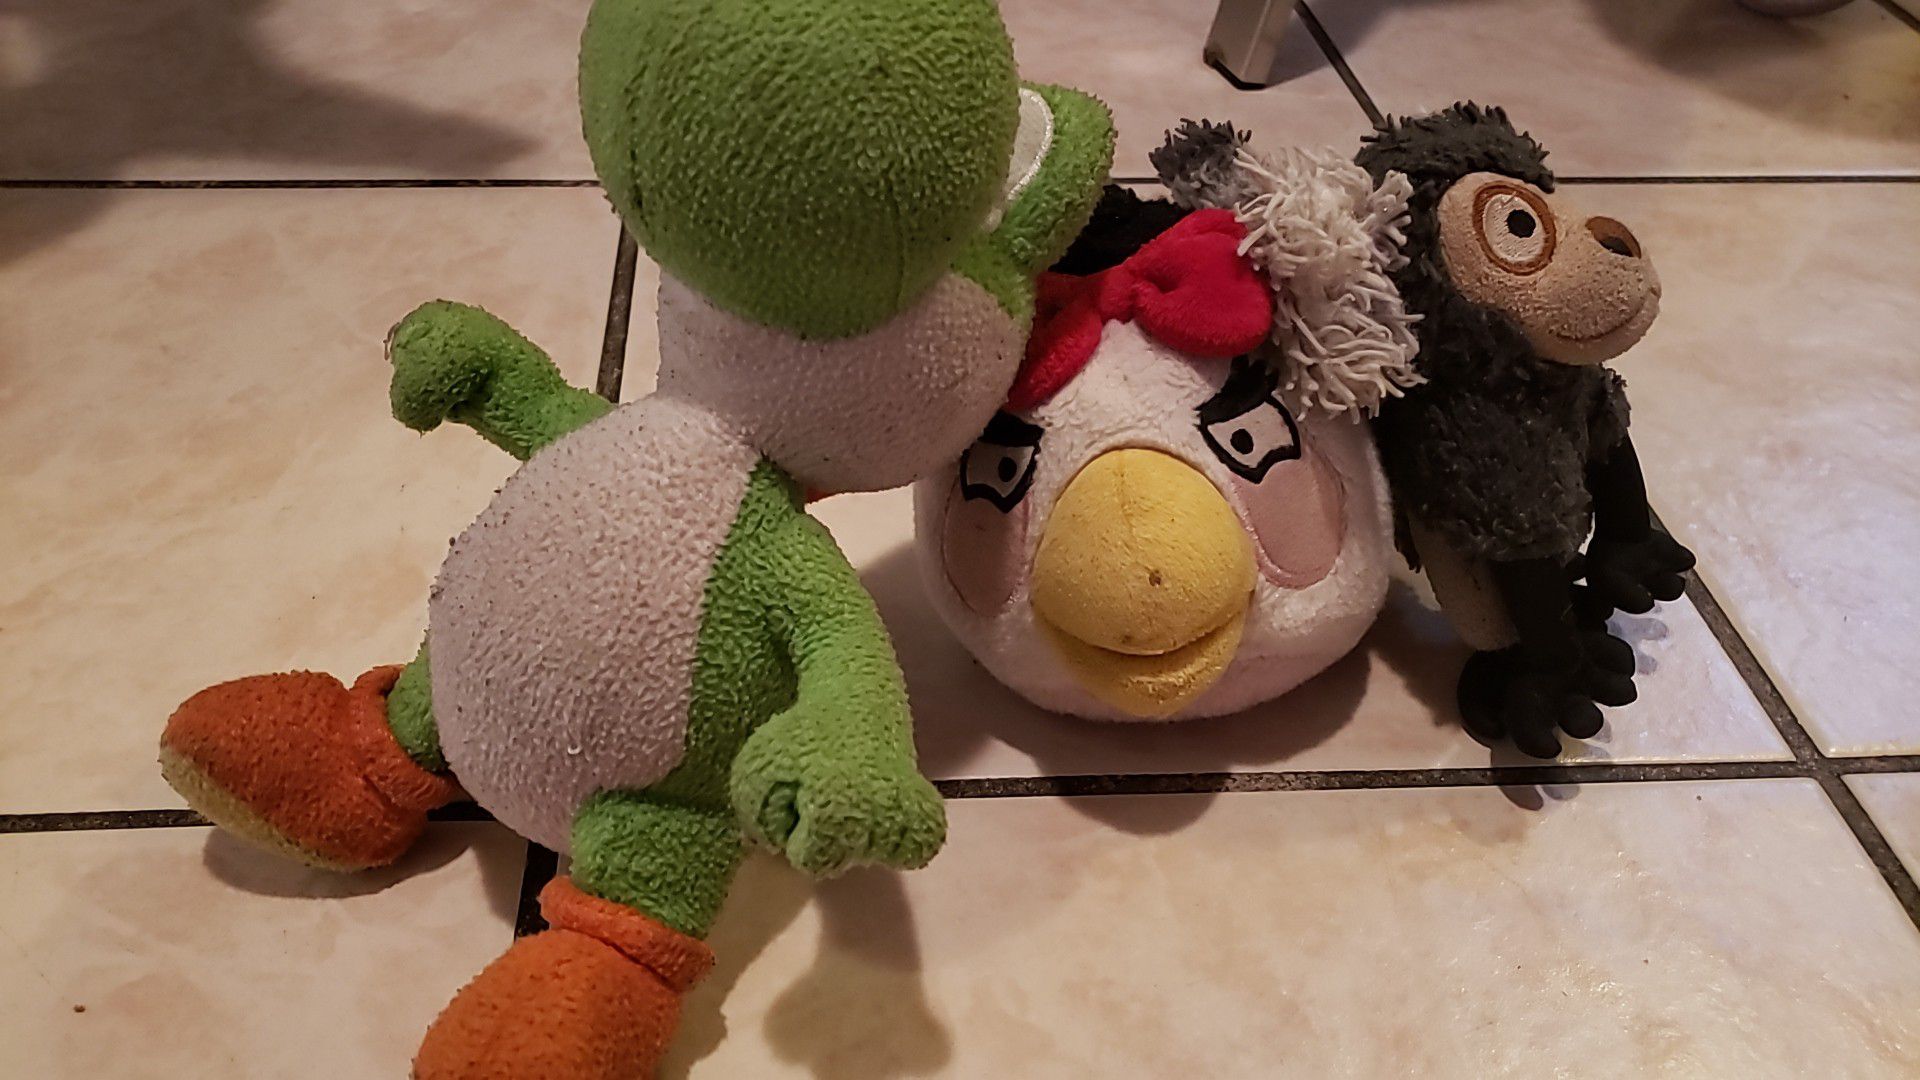 Yoshi, White Bird, and Monkey Plush Toys